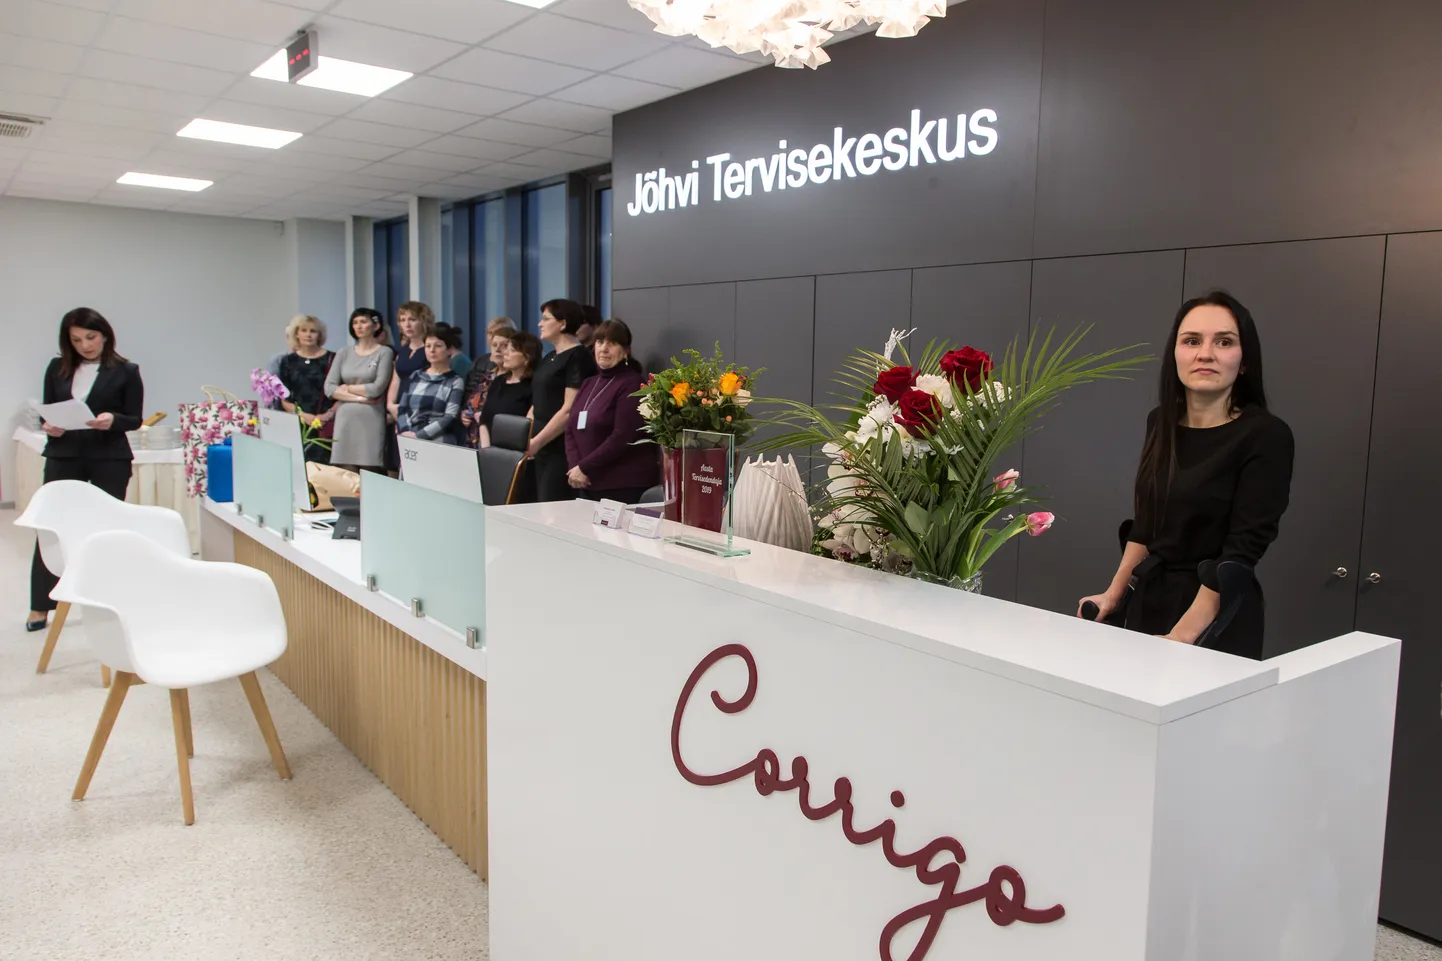 Руководитель "Corrigo" по персоналу Мерле Кальюс сказала, что  новом центре здоровья есть помещения еще для двух семейных врачей.